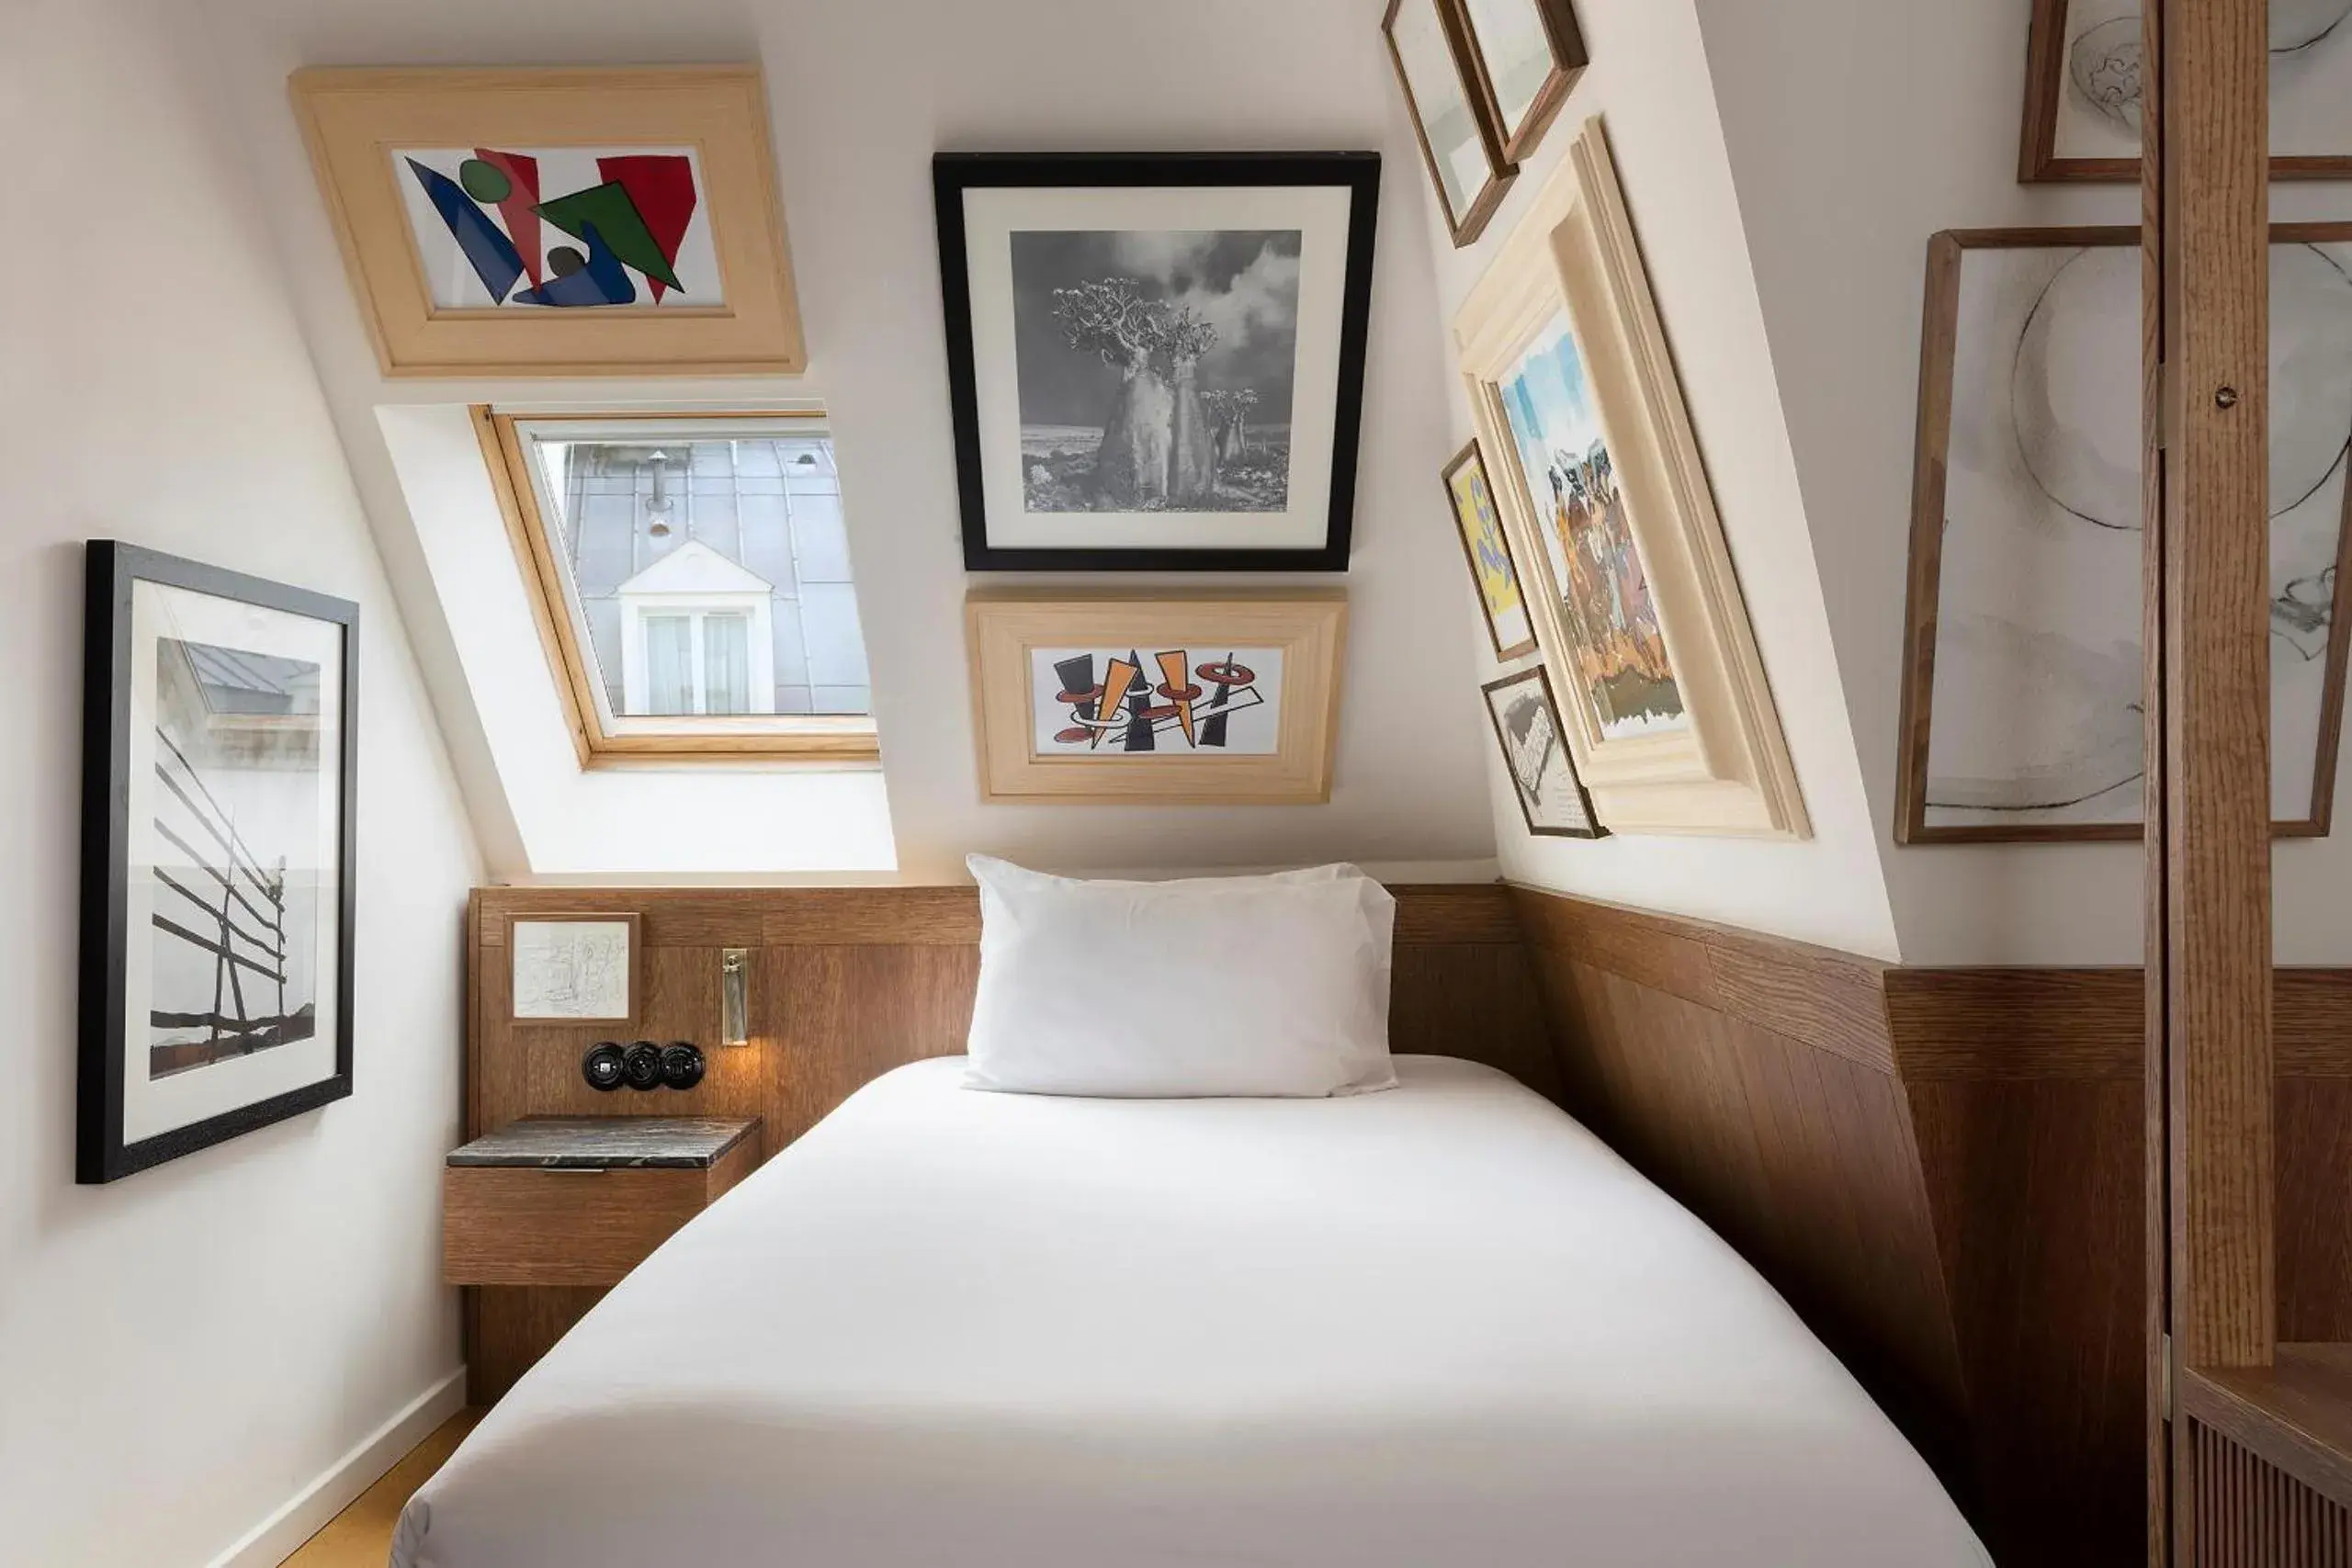 Bed in Hotel Pulitzer Paris